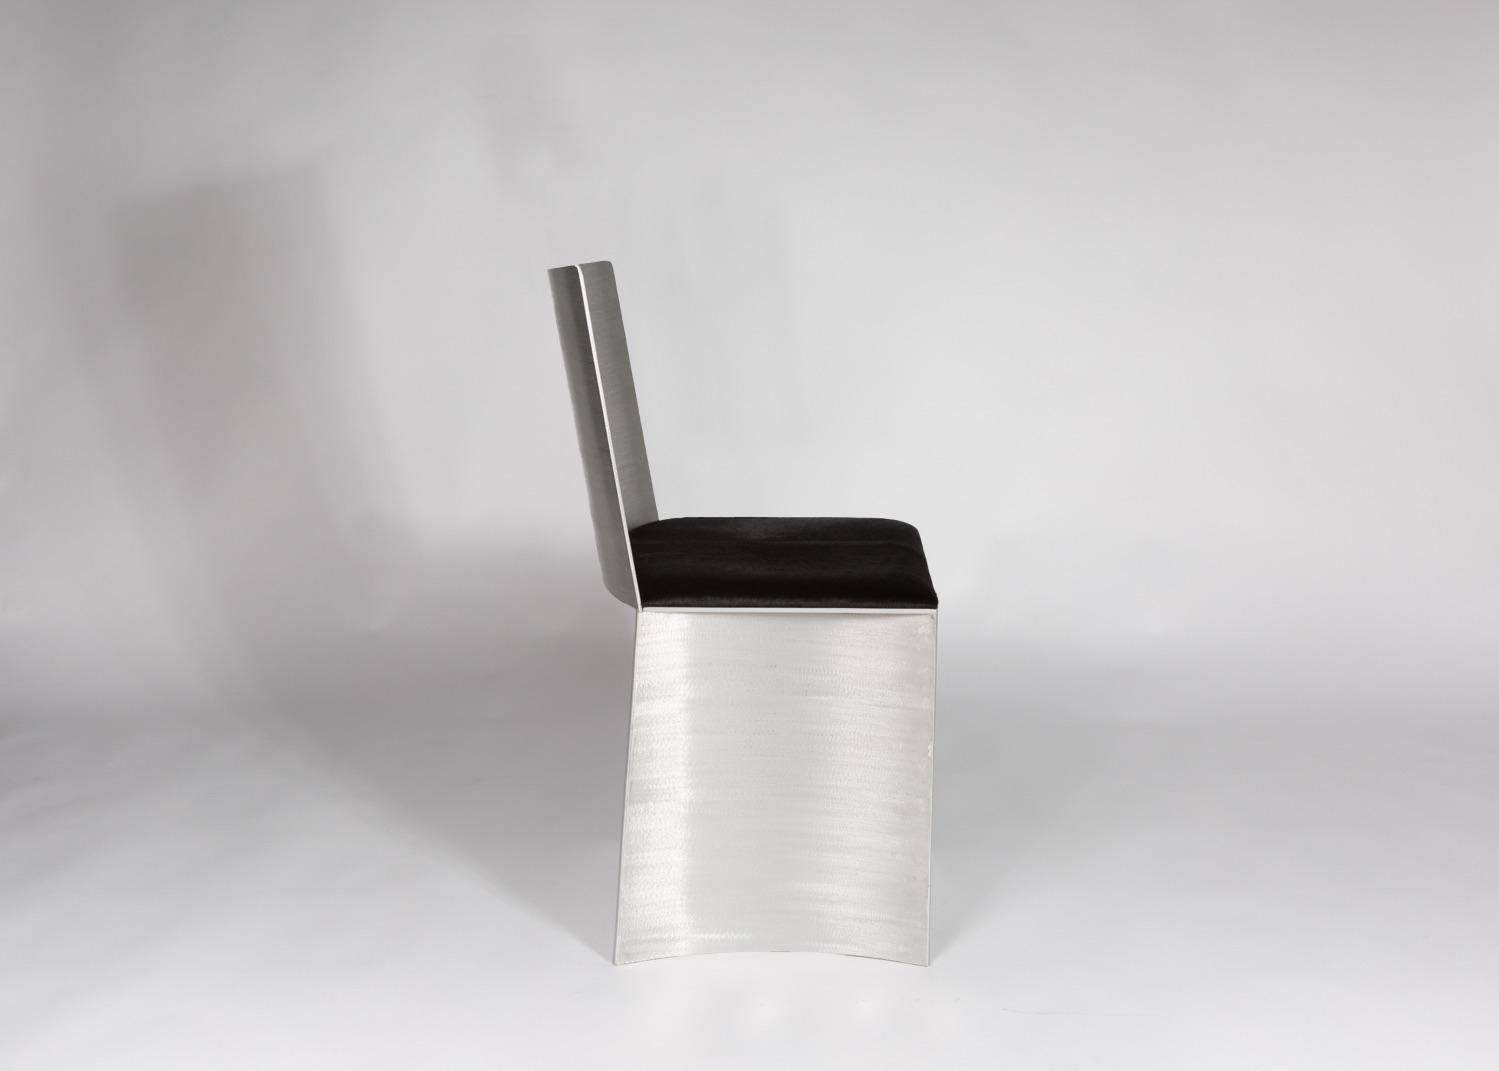 La chaise à dossier bas de l'ISU est dotée d'une finition métallique texturée satinée, fabriquée à la main, qui brille lorsqu'elle est exposée à la lumière. Le coussin d'assise de 1,50